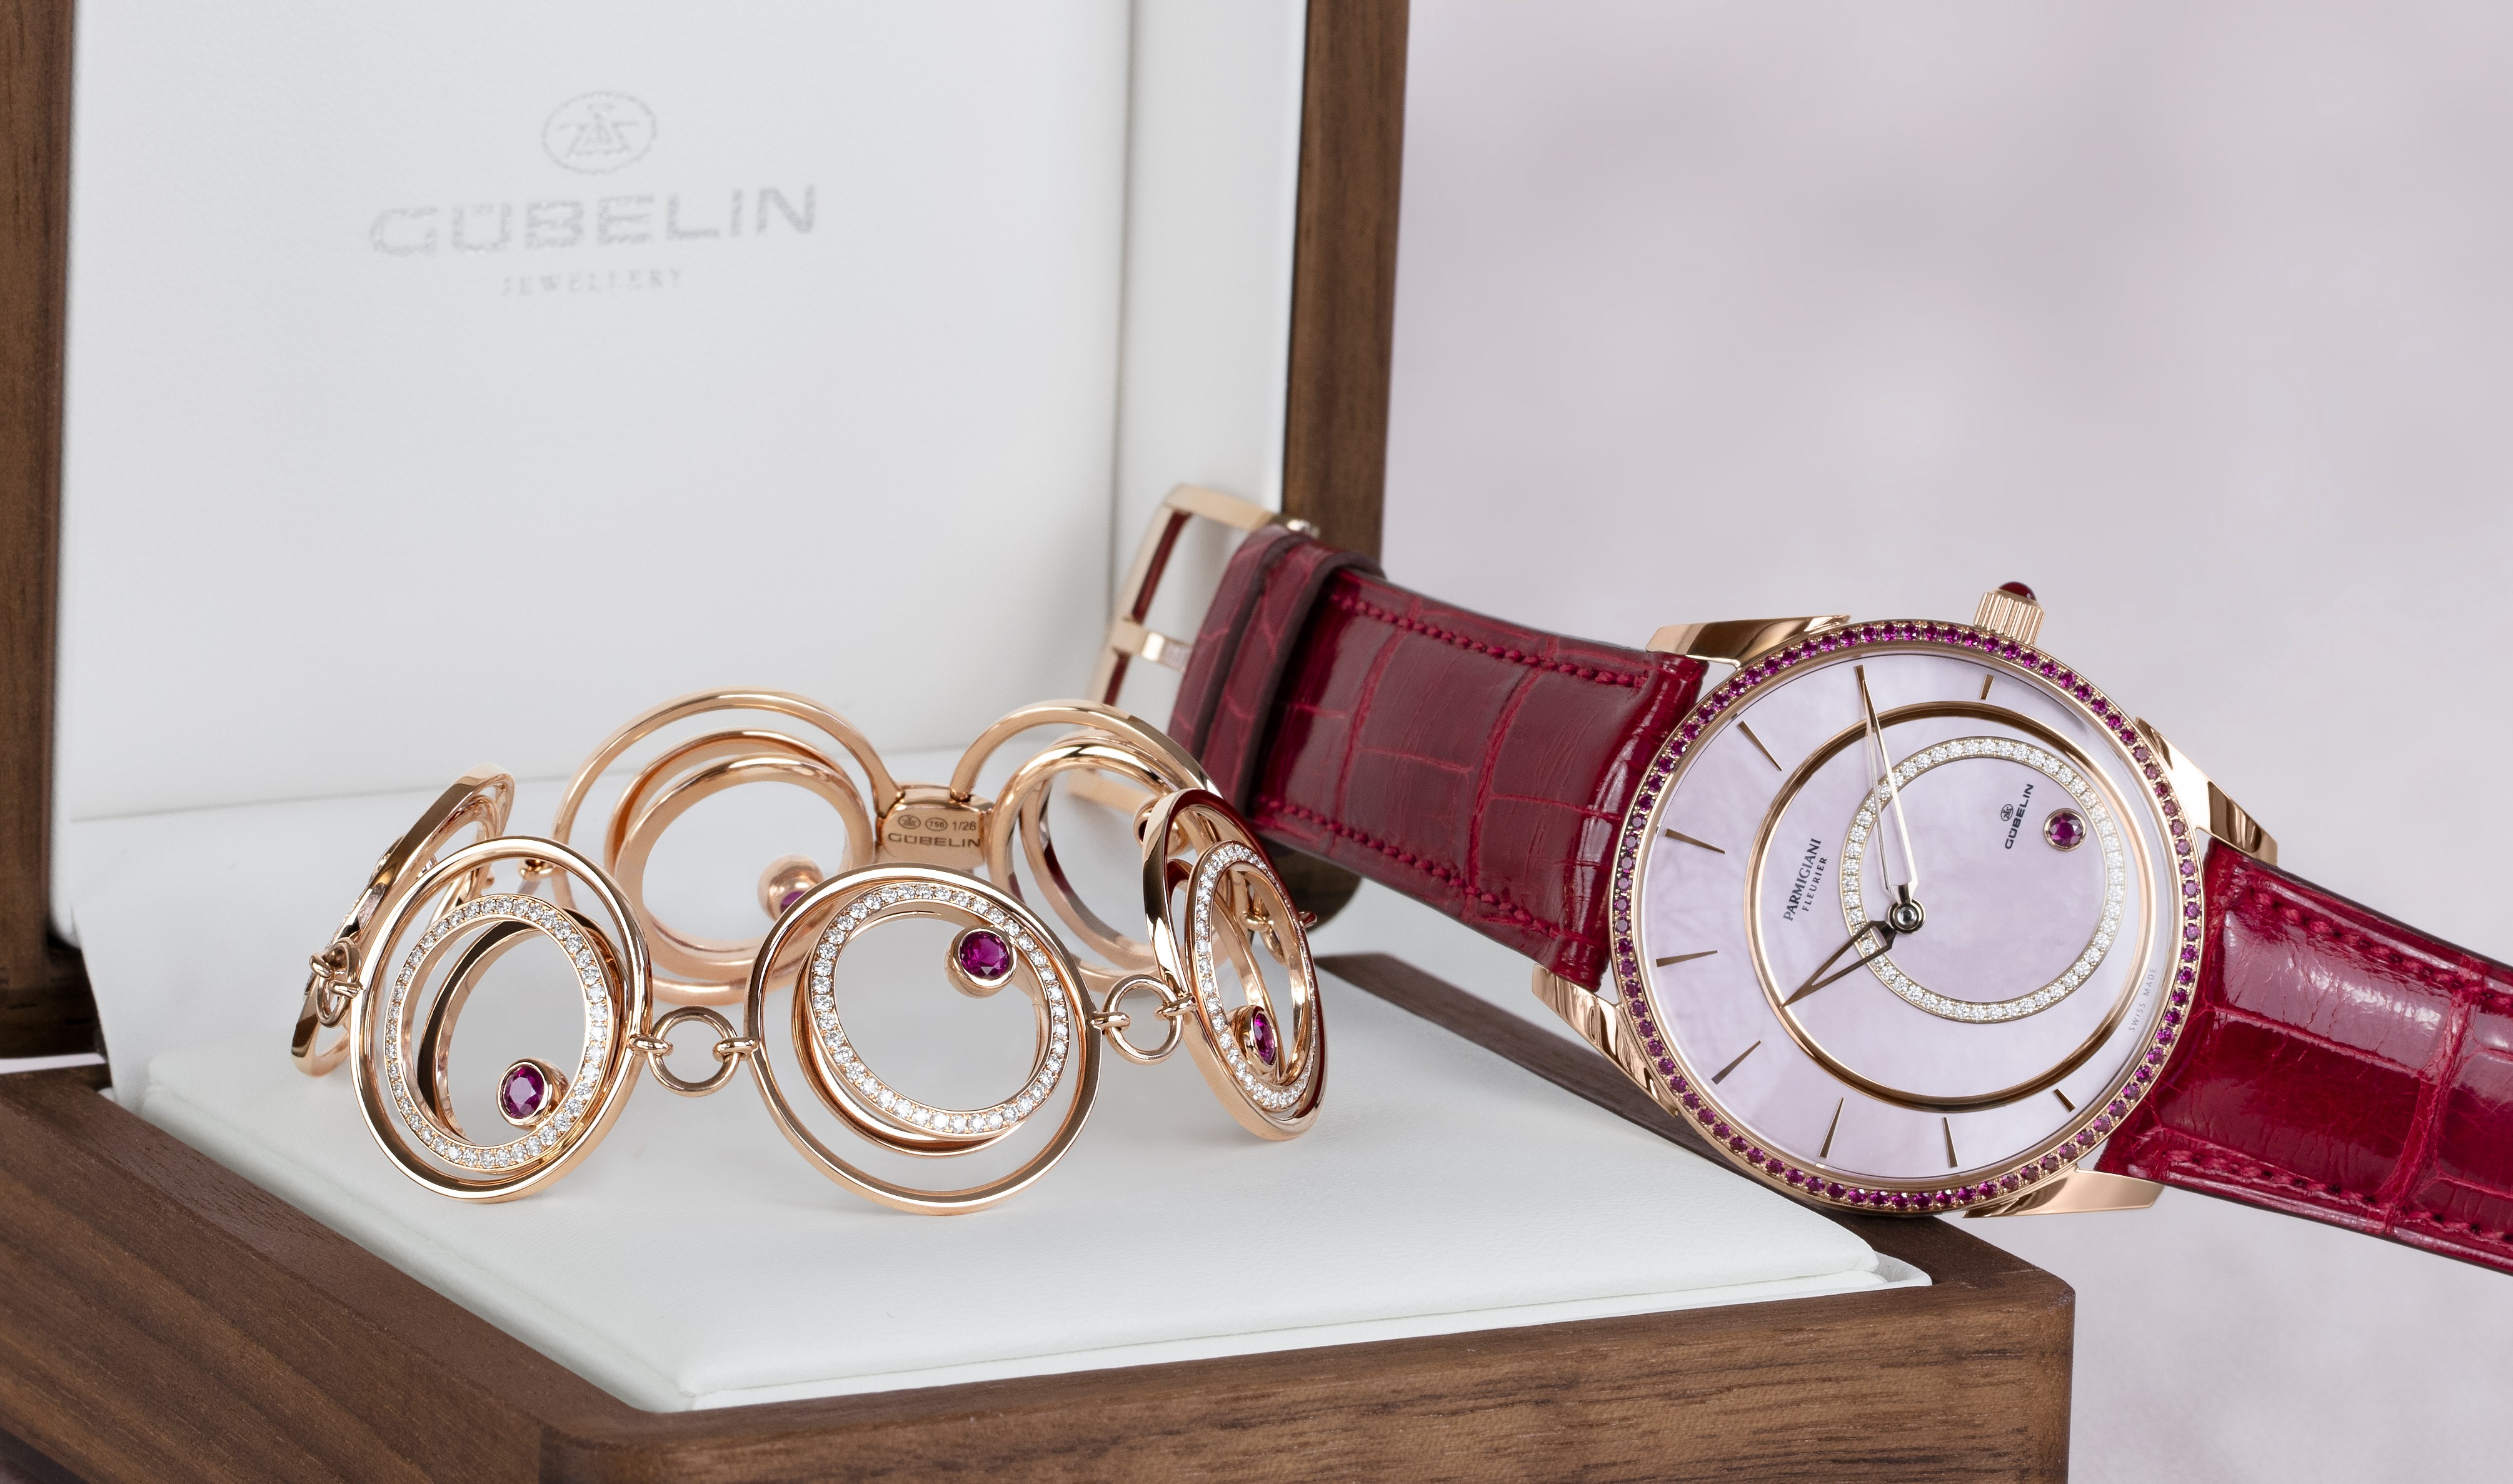 Gubelin x Parmigiani Fleurier collaboration bracelet and watch